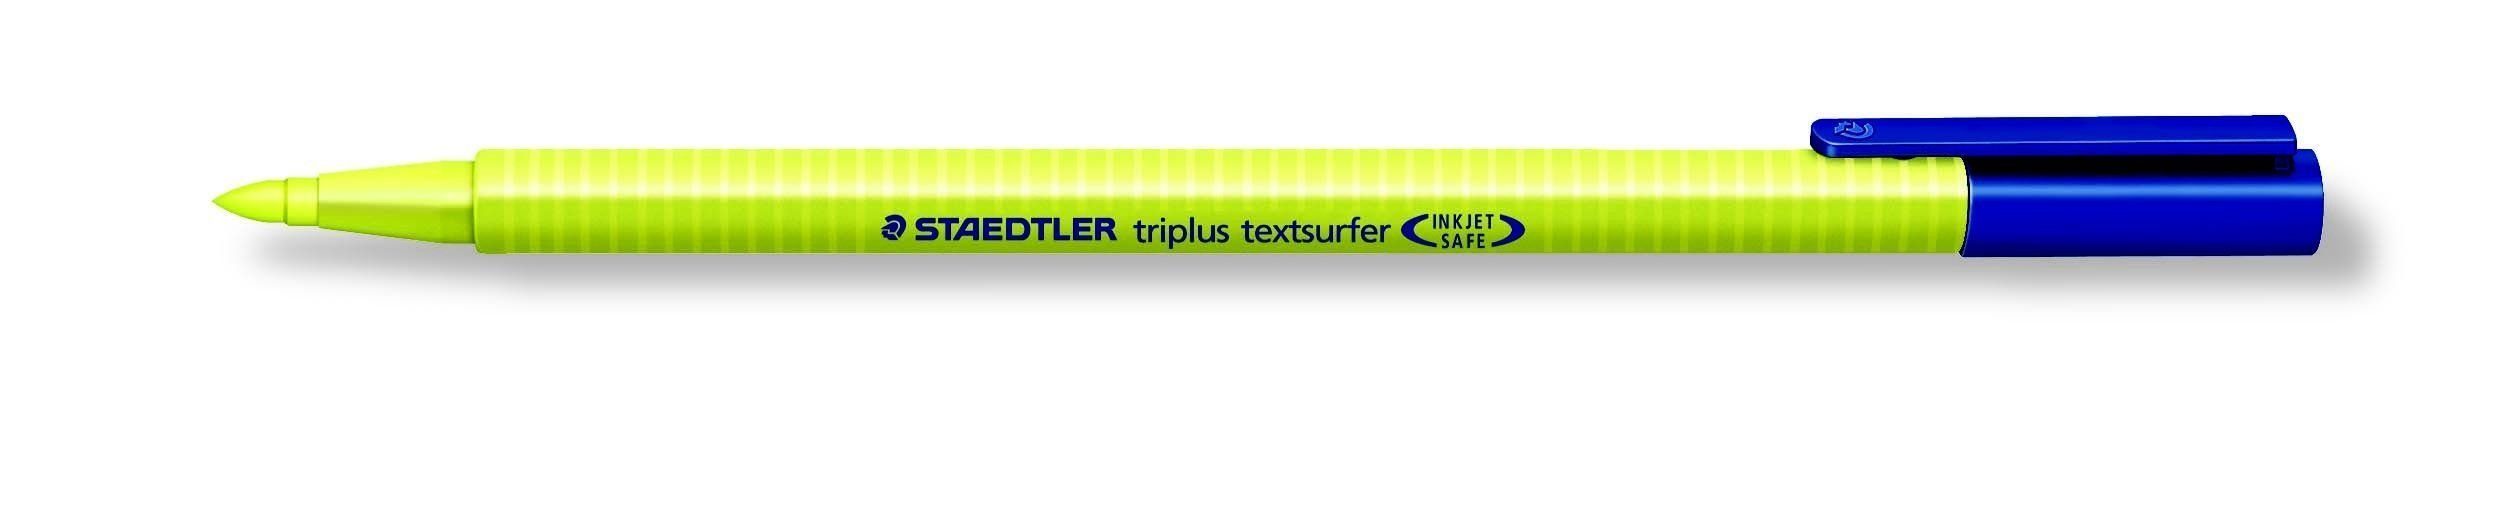 STAEDTLER Kugelschreiber STAEDTLER Textmarker triplus textsurfer gelb